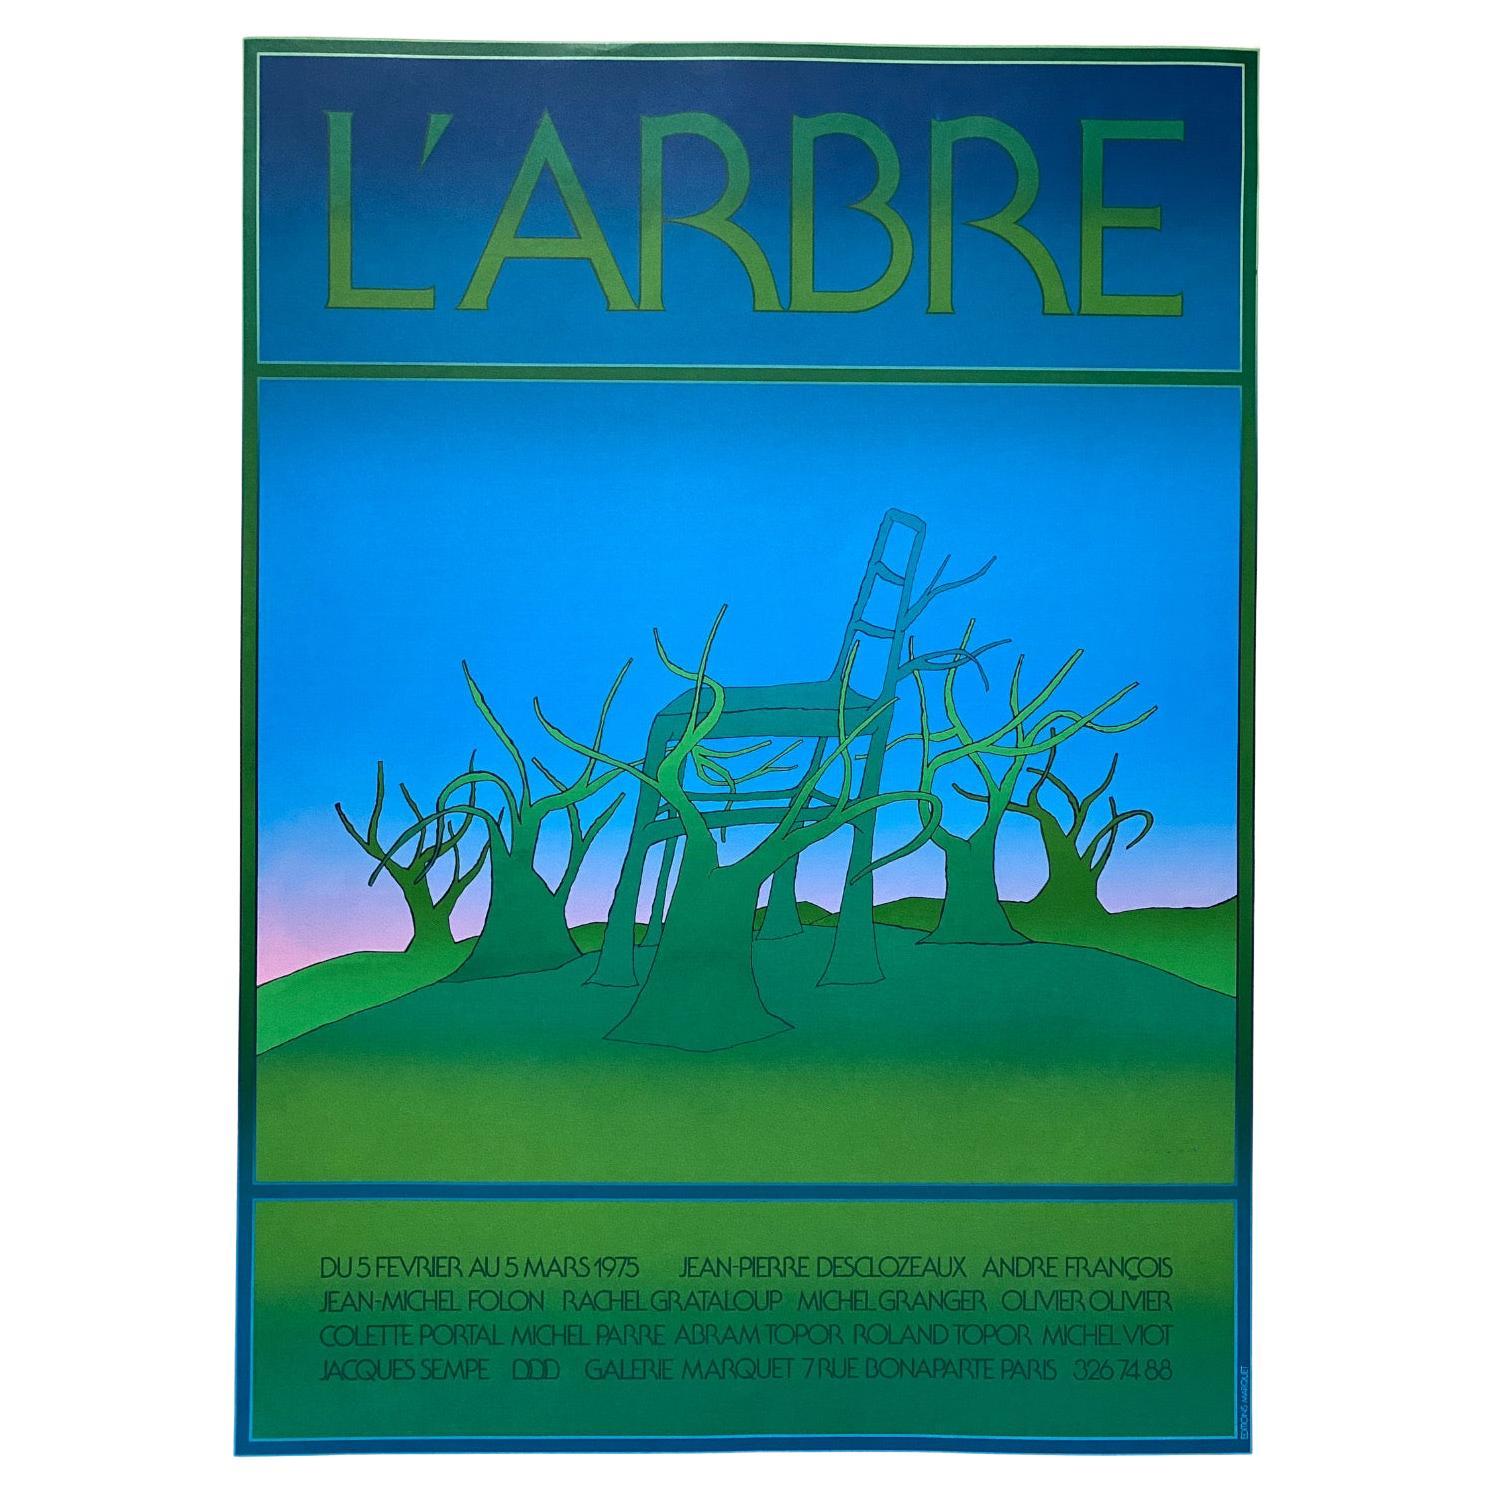 Jean Michel Folon "L' Arbre" Serigrafia per Gallerie Marquet, Parigi - 1975